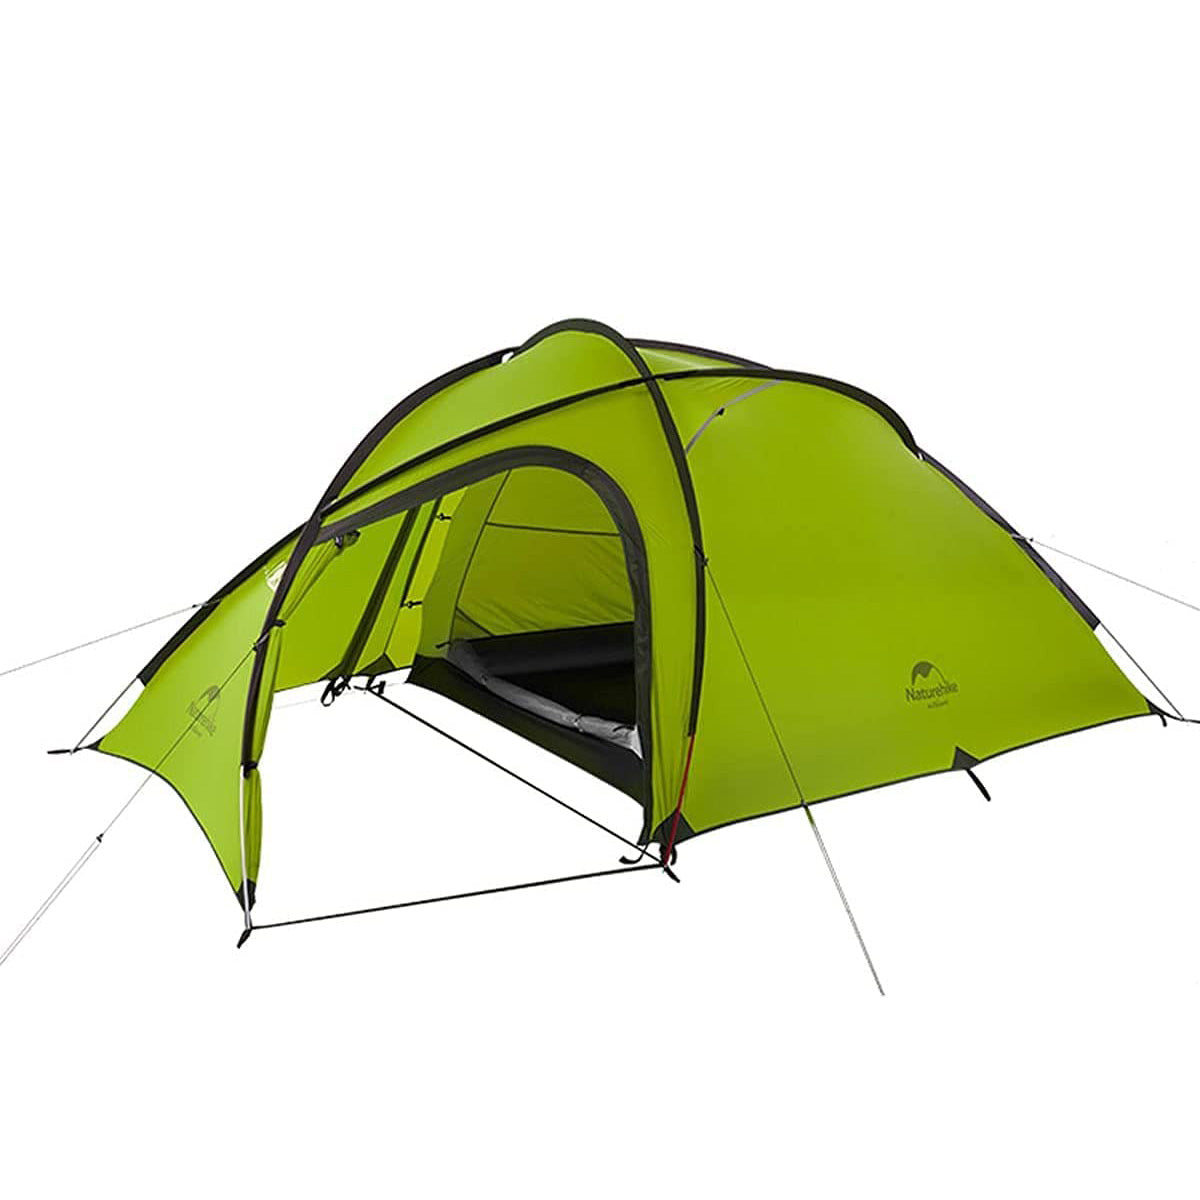 Naturehike Hiby4 4人用キャンプ テント 2020Q1アップグレード版 アウトドア登山テント ゆったり前室 タープスペース付 - 2